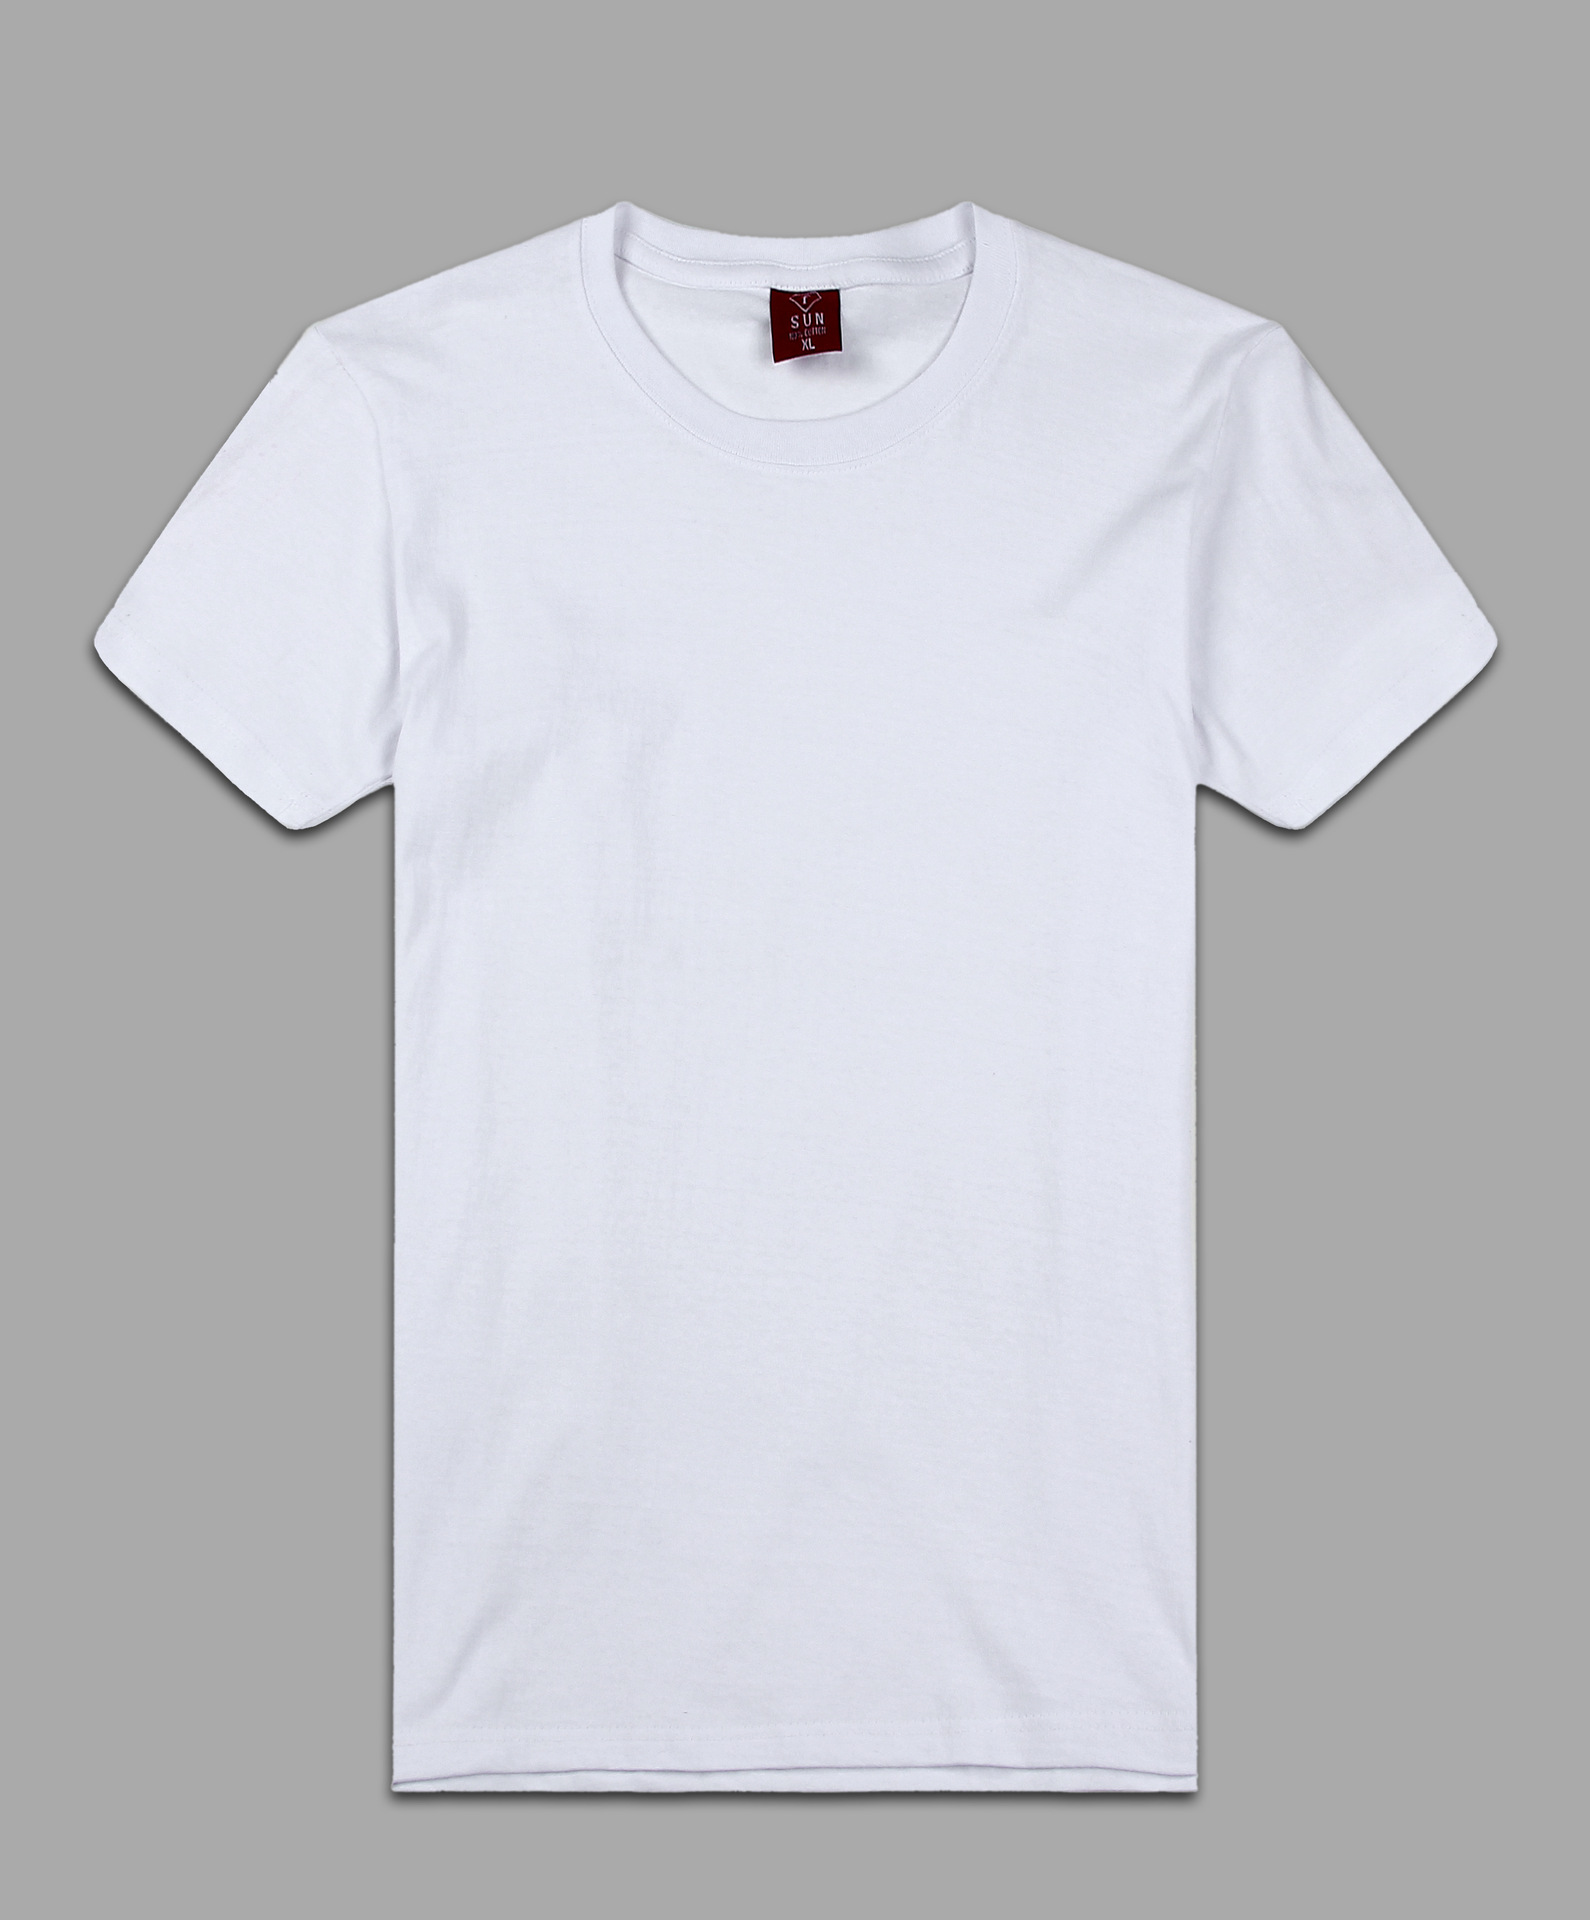 郑州批发 sun纯棉男士圆领短袖空白纯白t恤文化衫广告衫160g纯棉